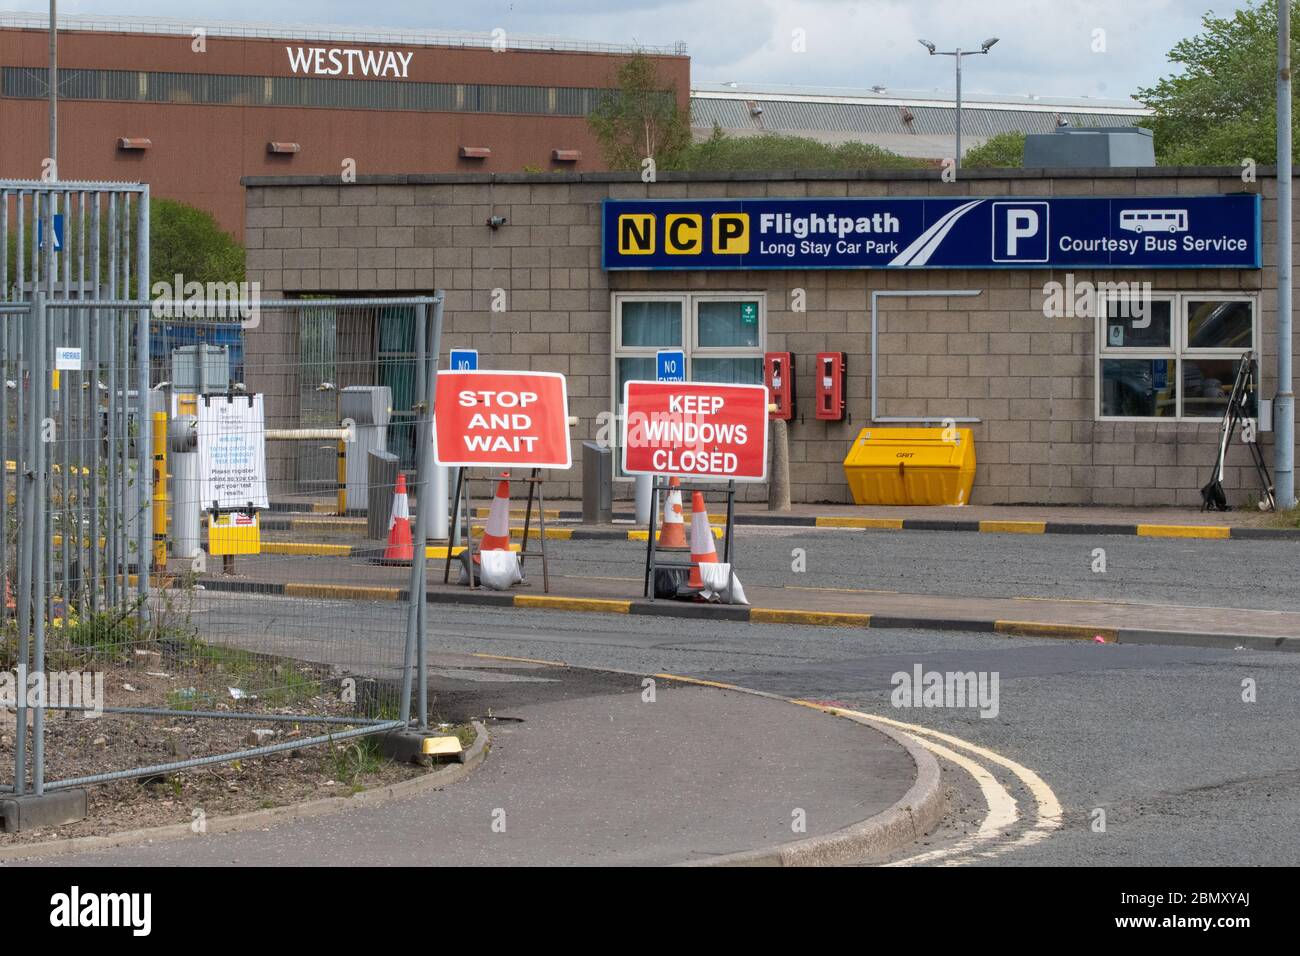 Centre d'essais du coronavirus au parking longue durée NCP Flightpath, aéroport de Glasgow, Écosse, Royaume-Uni Banque D'Images